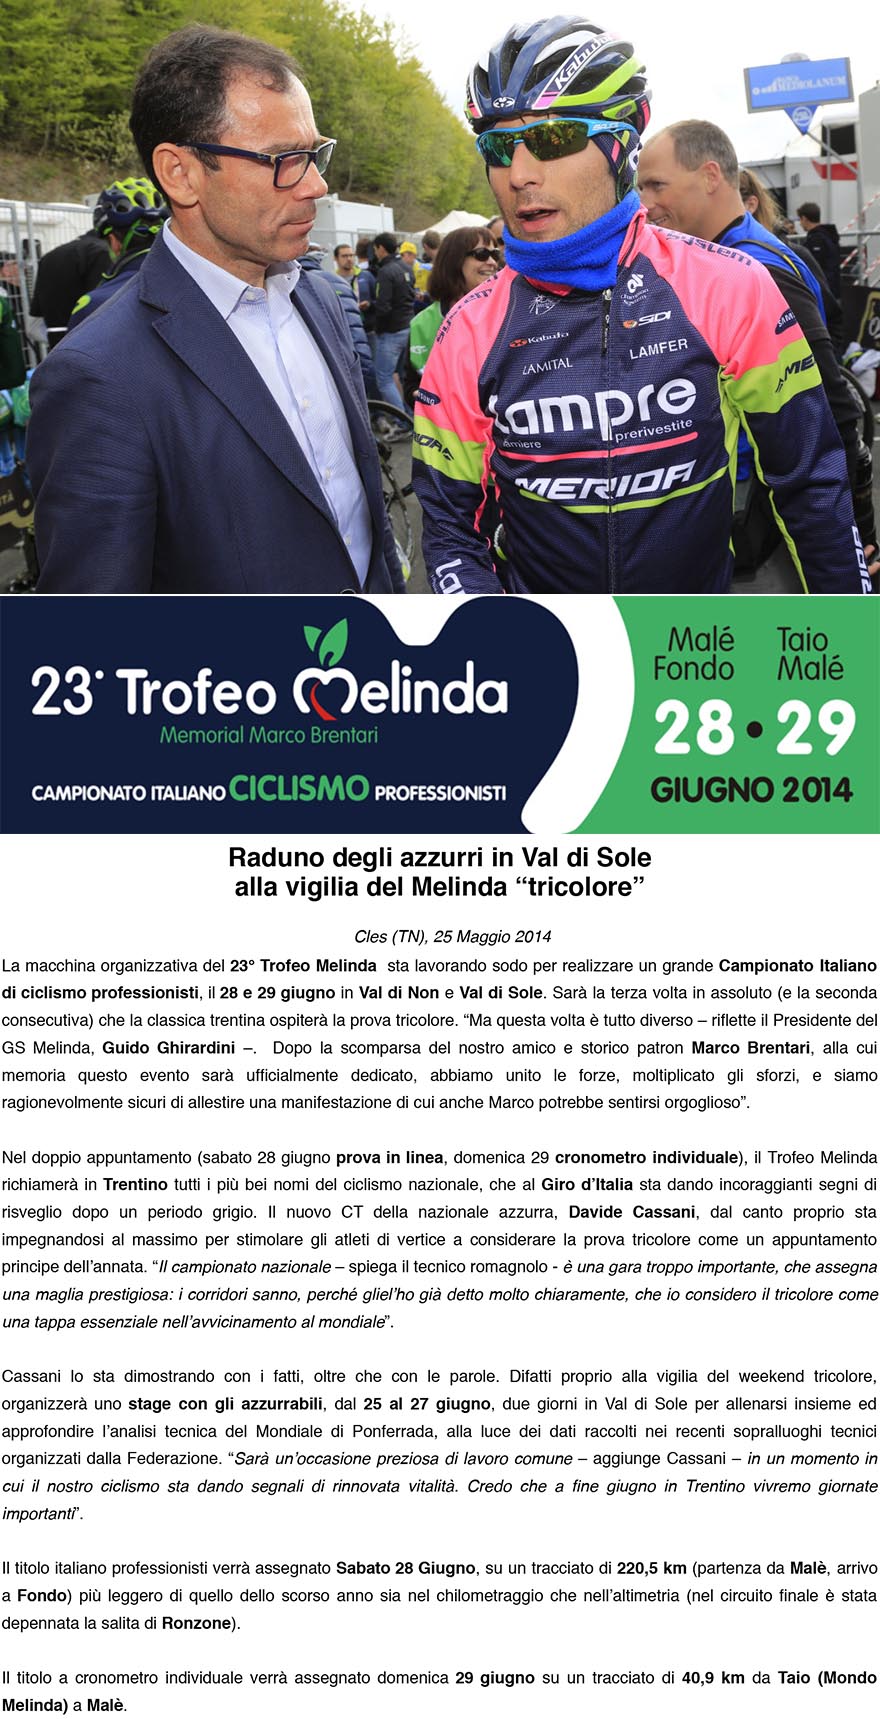 23 Trofeo MelindaMemorial Marco Brentari  Campionato Italiano Professionisti  Comunicato Stampa 26 Maggio 2013